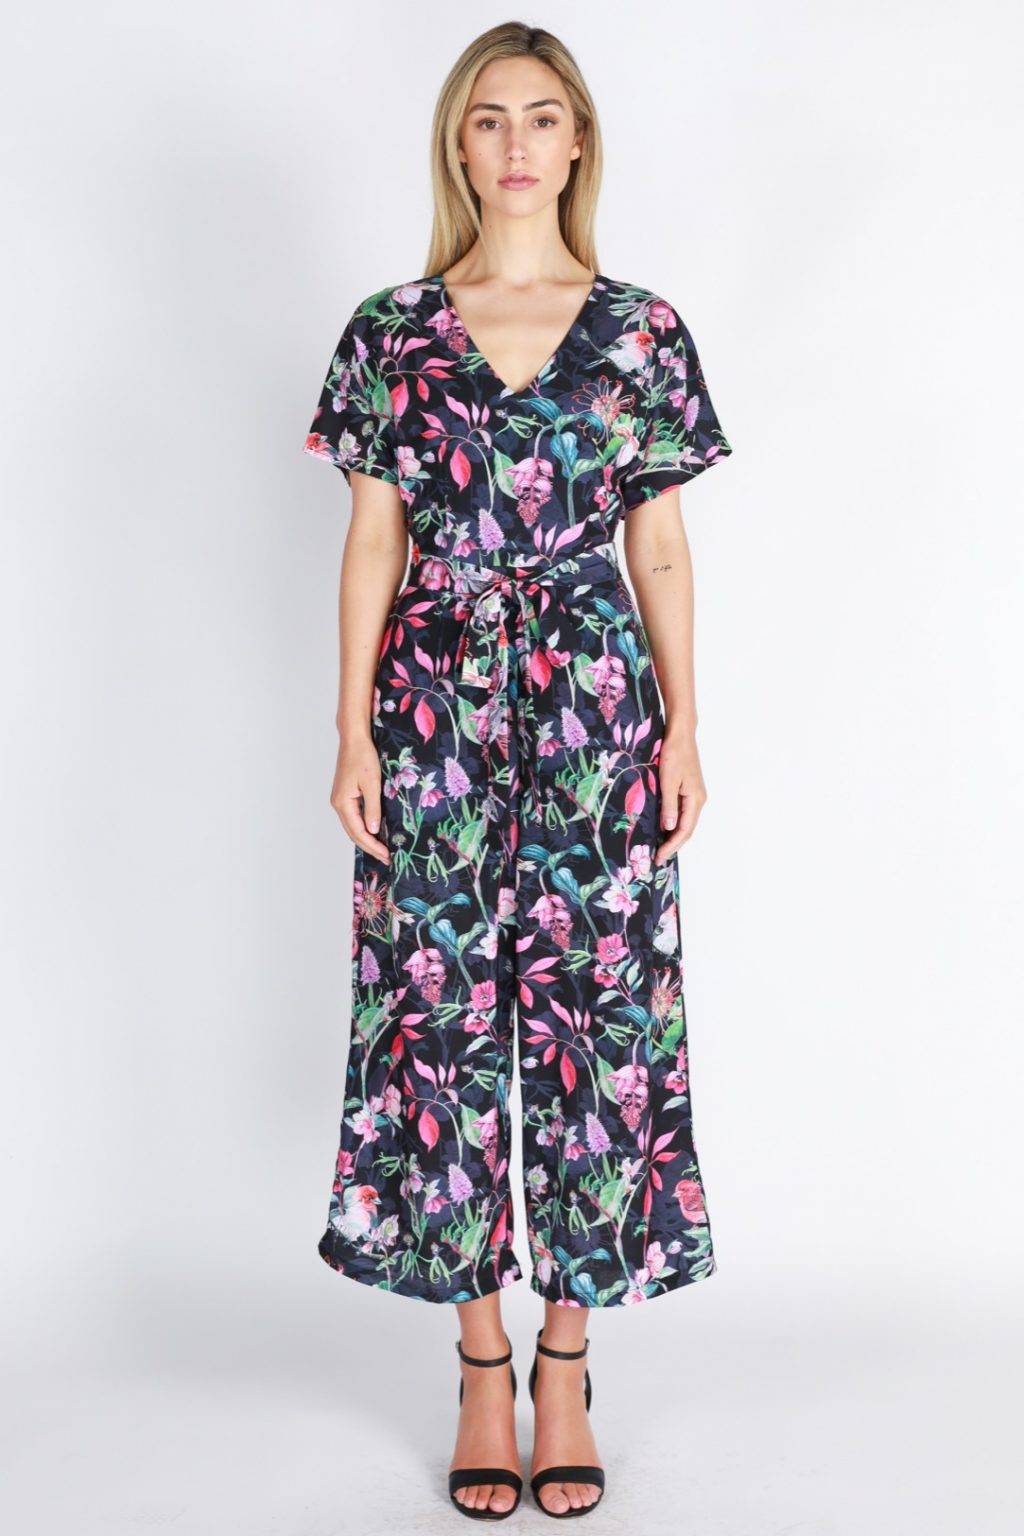 Floral Pantsuit - Florence Store - Women's Boutique Fashion - Online ...